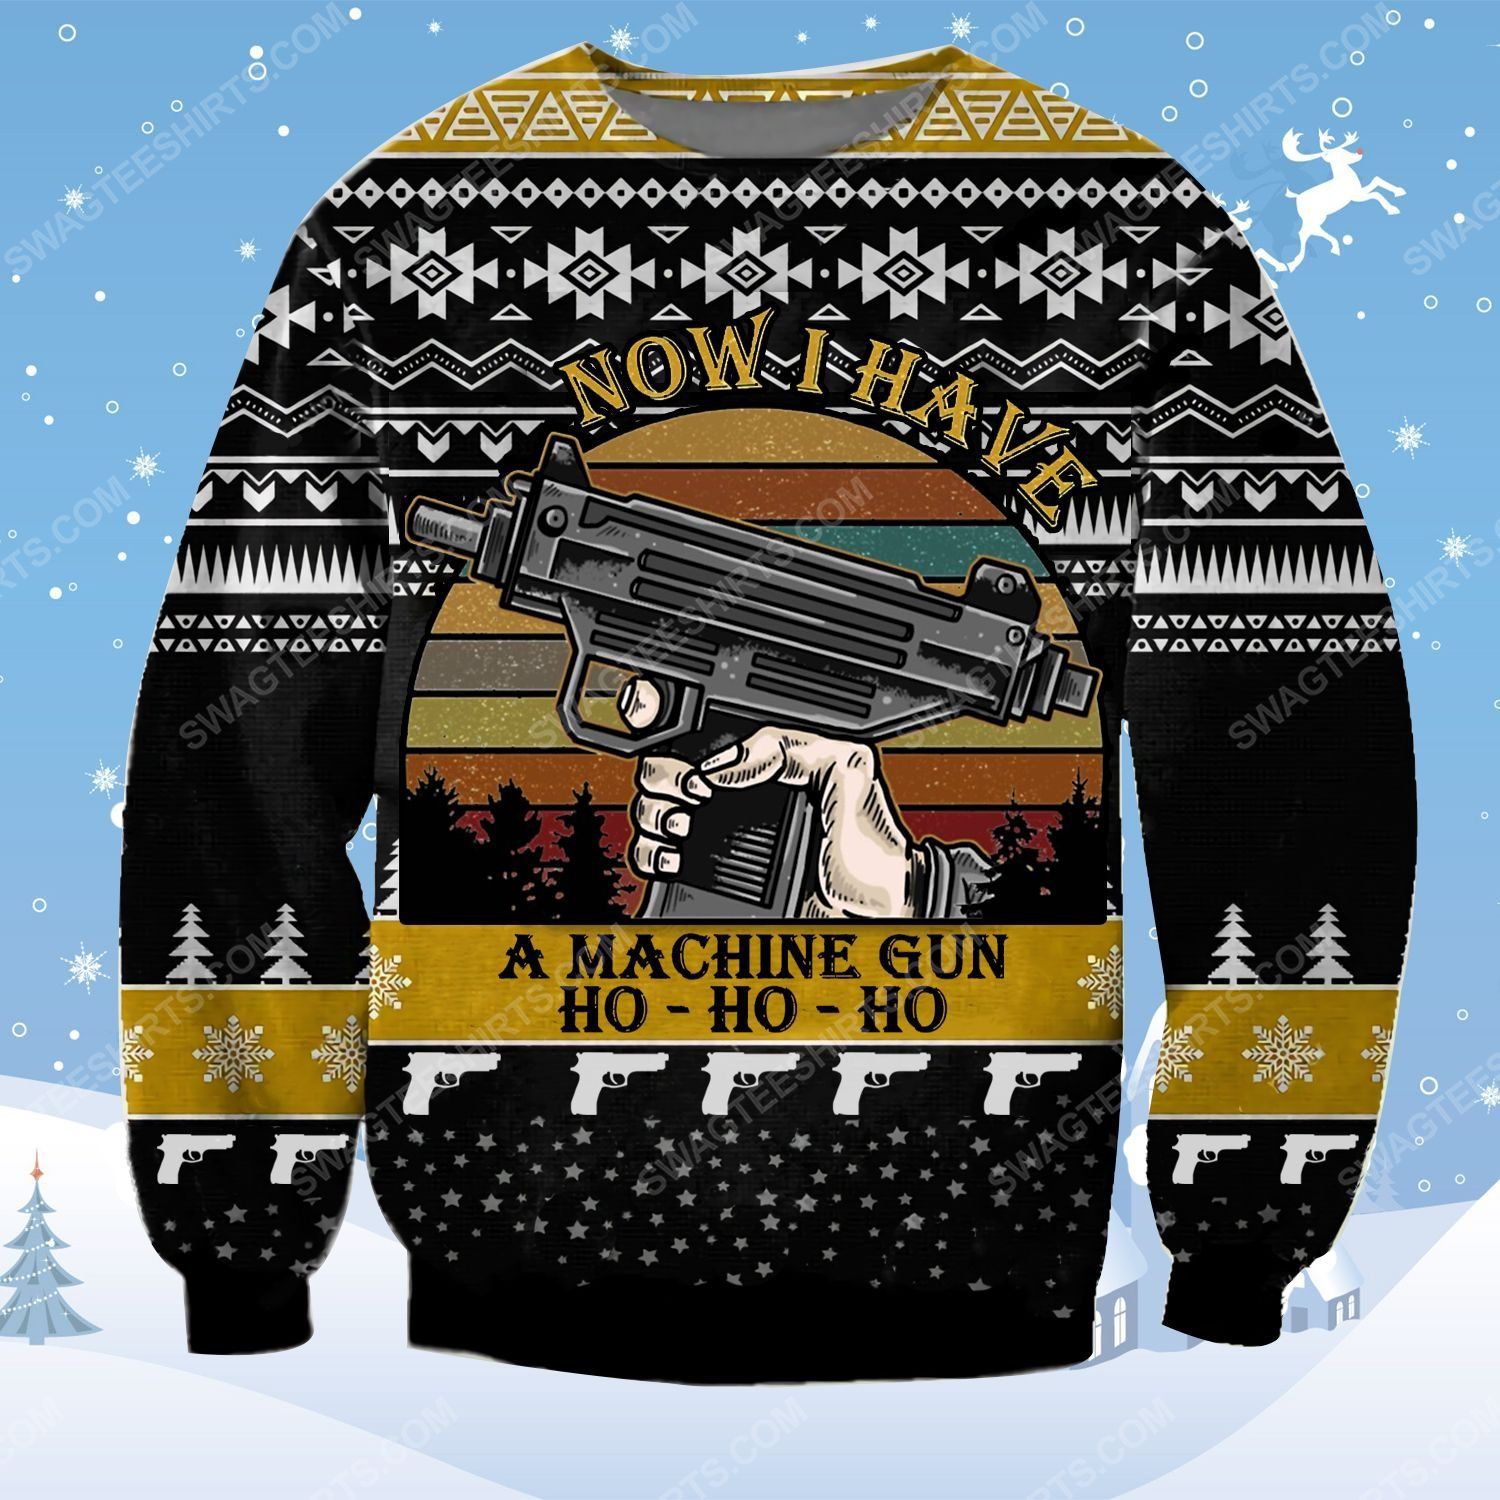 Die hard now i have a machine gun ho ho ho ugly christmas sweater - Copy (2)